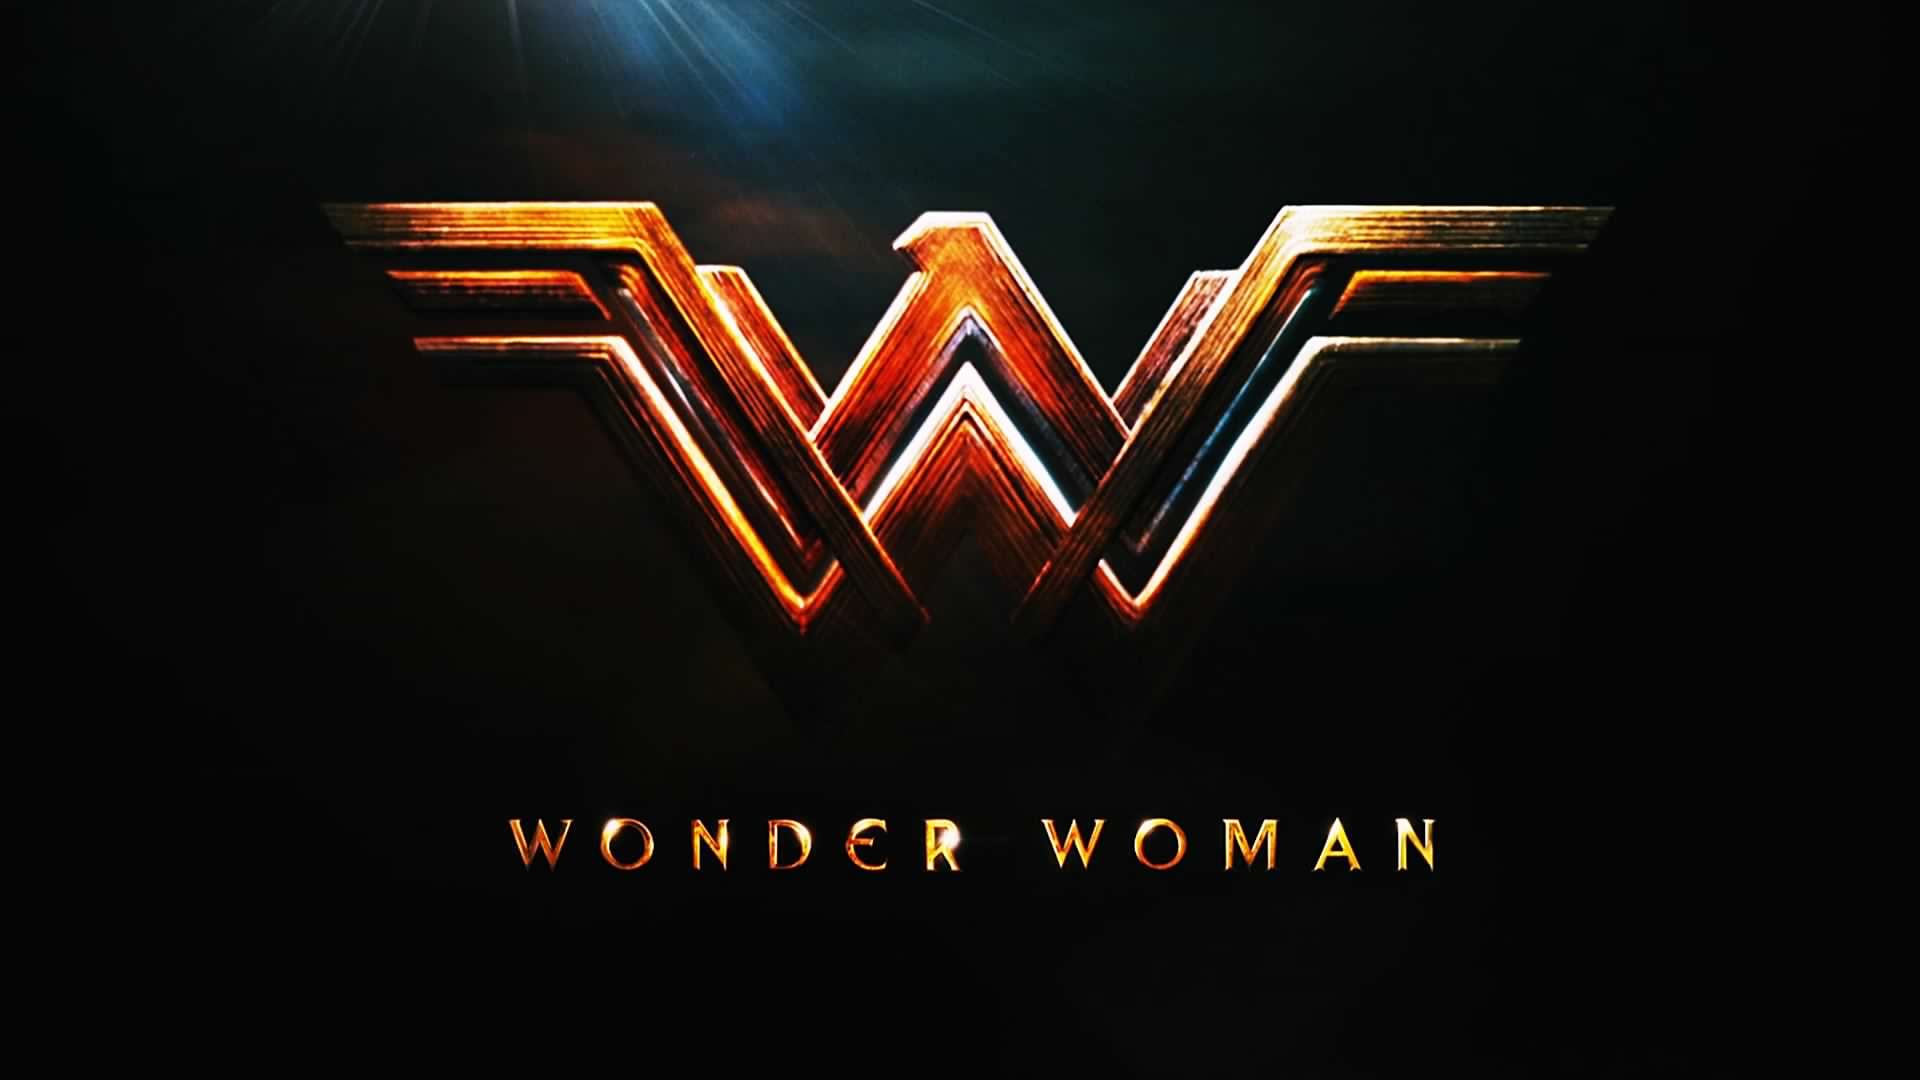 Wonder women free 2017 movie